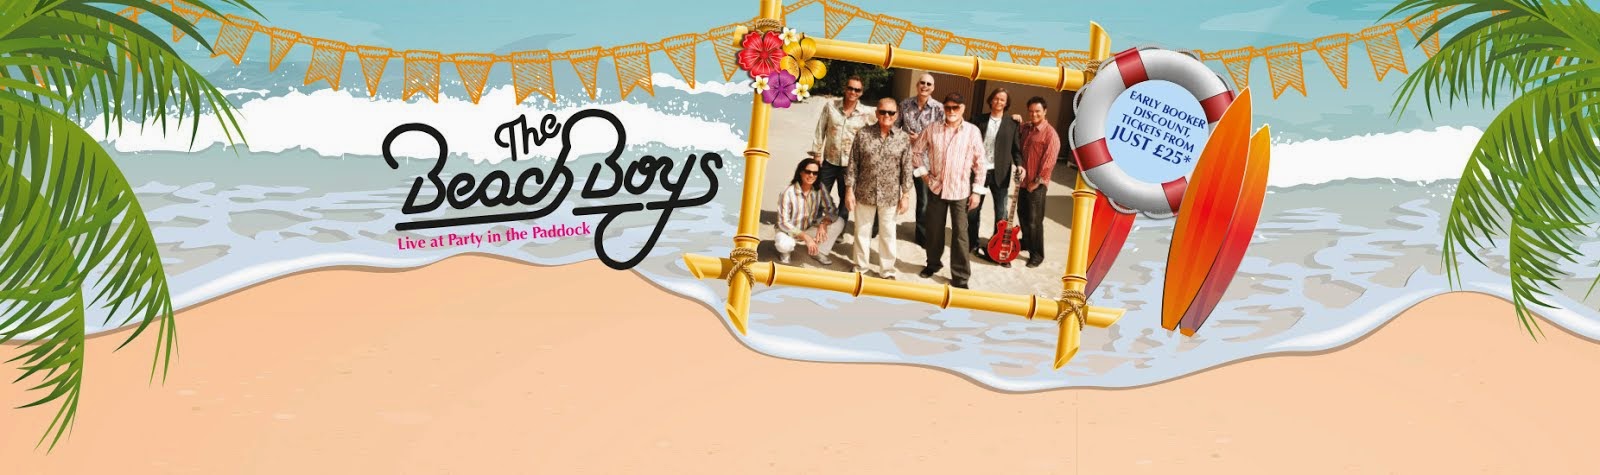 beachboys